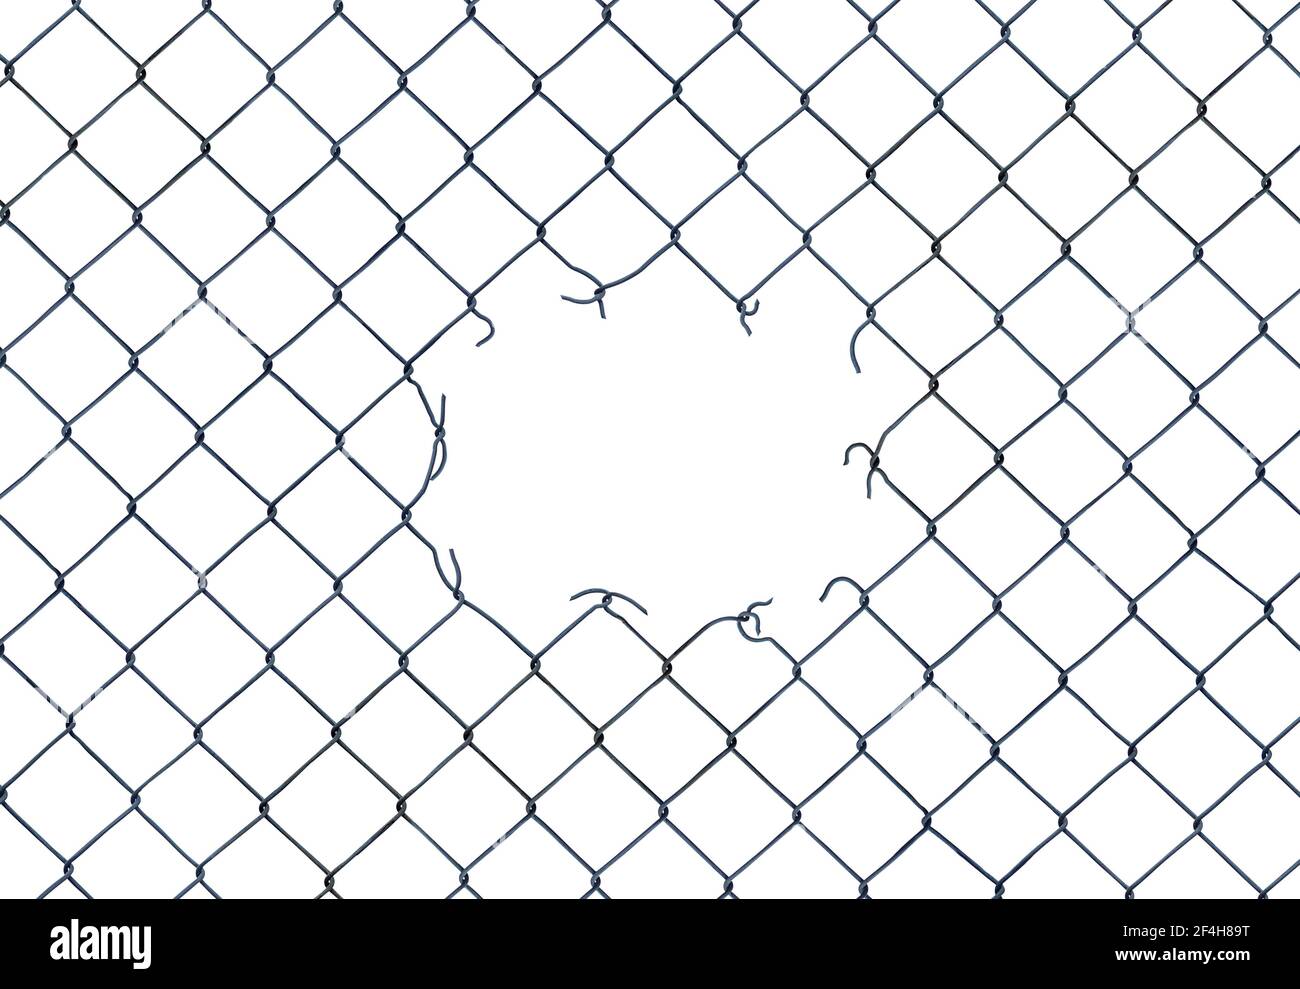 Immagine di framing di un foro in una fence di collegamento a catena attivata Uno sfondo bianco Foto Stock